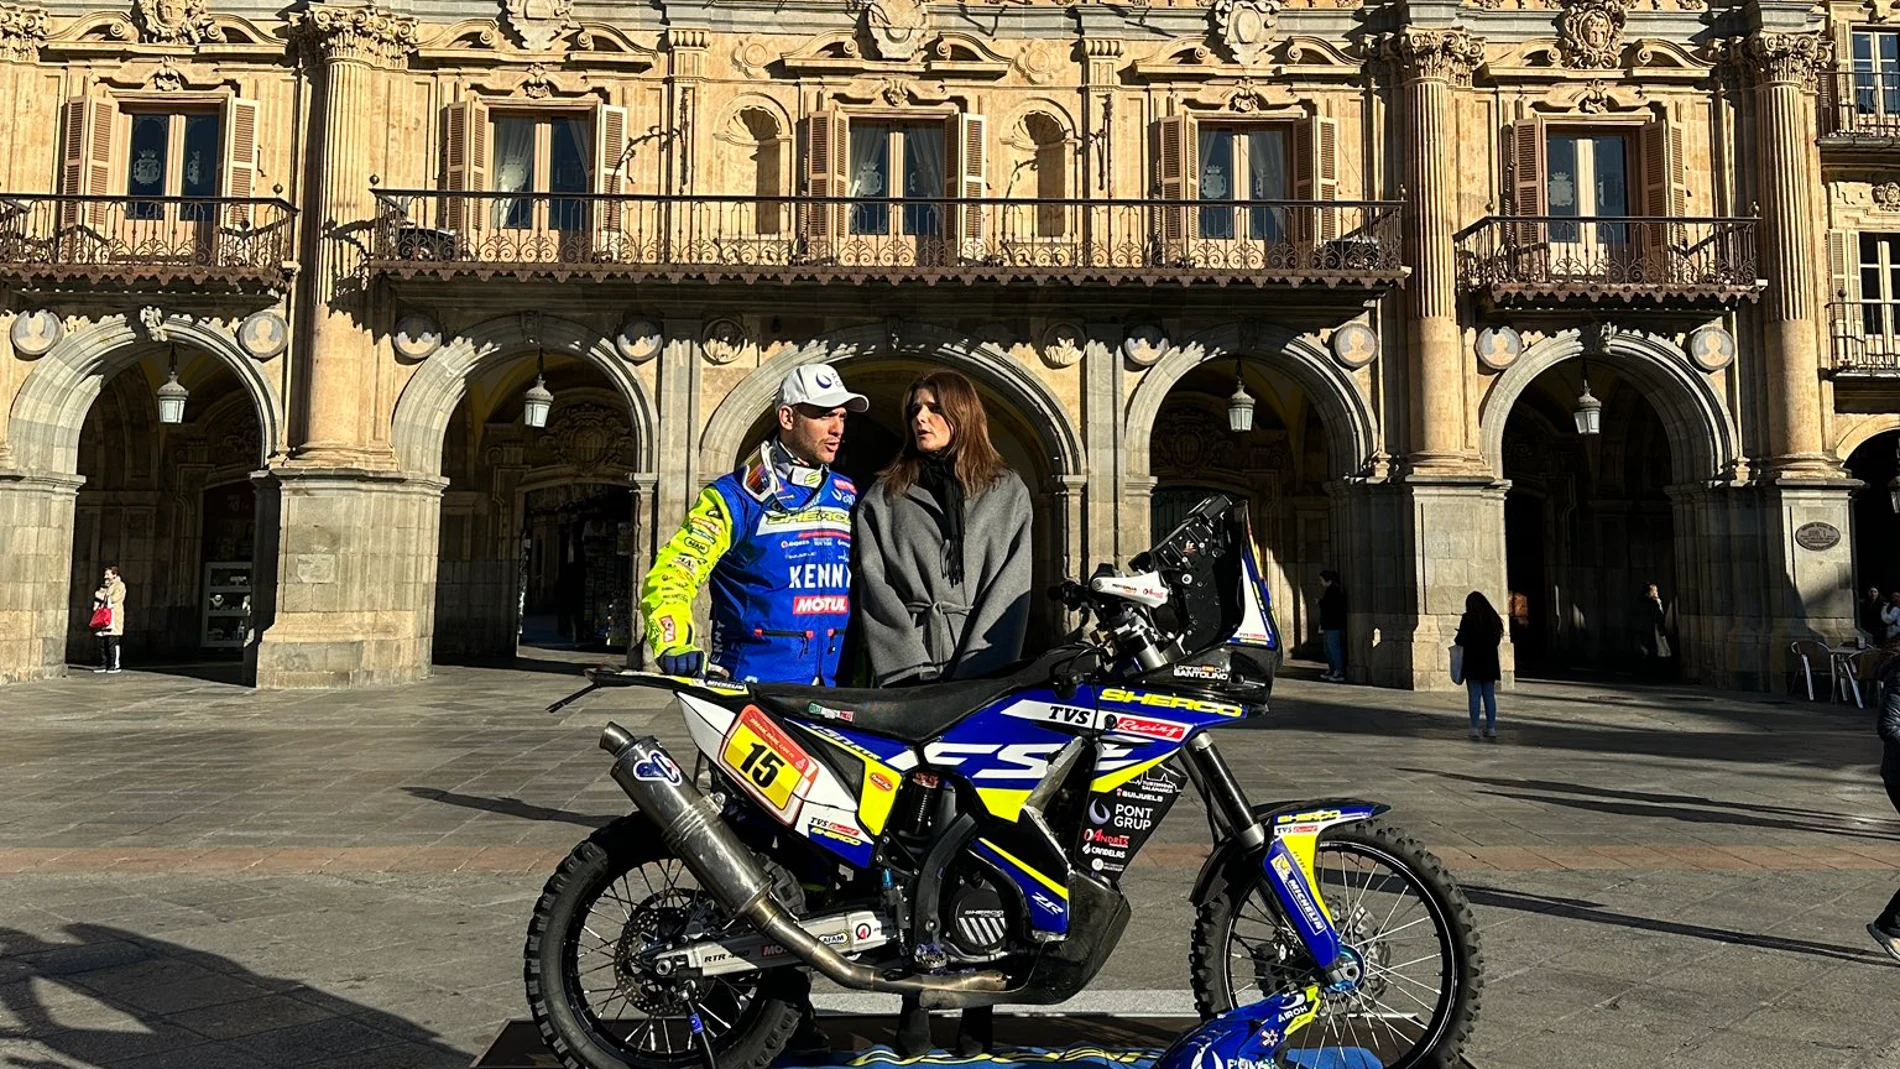 La concejala de Deportes, Almudena Parres, felicita al piloto a Lorenzo Santolino